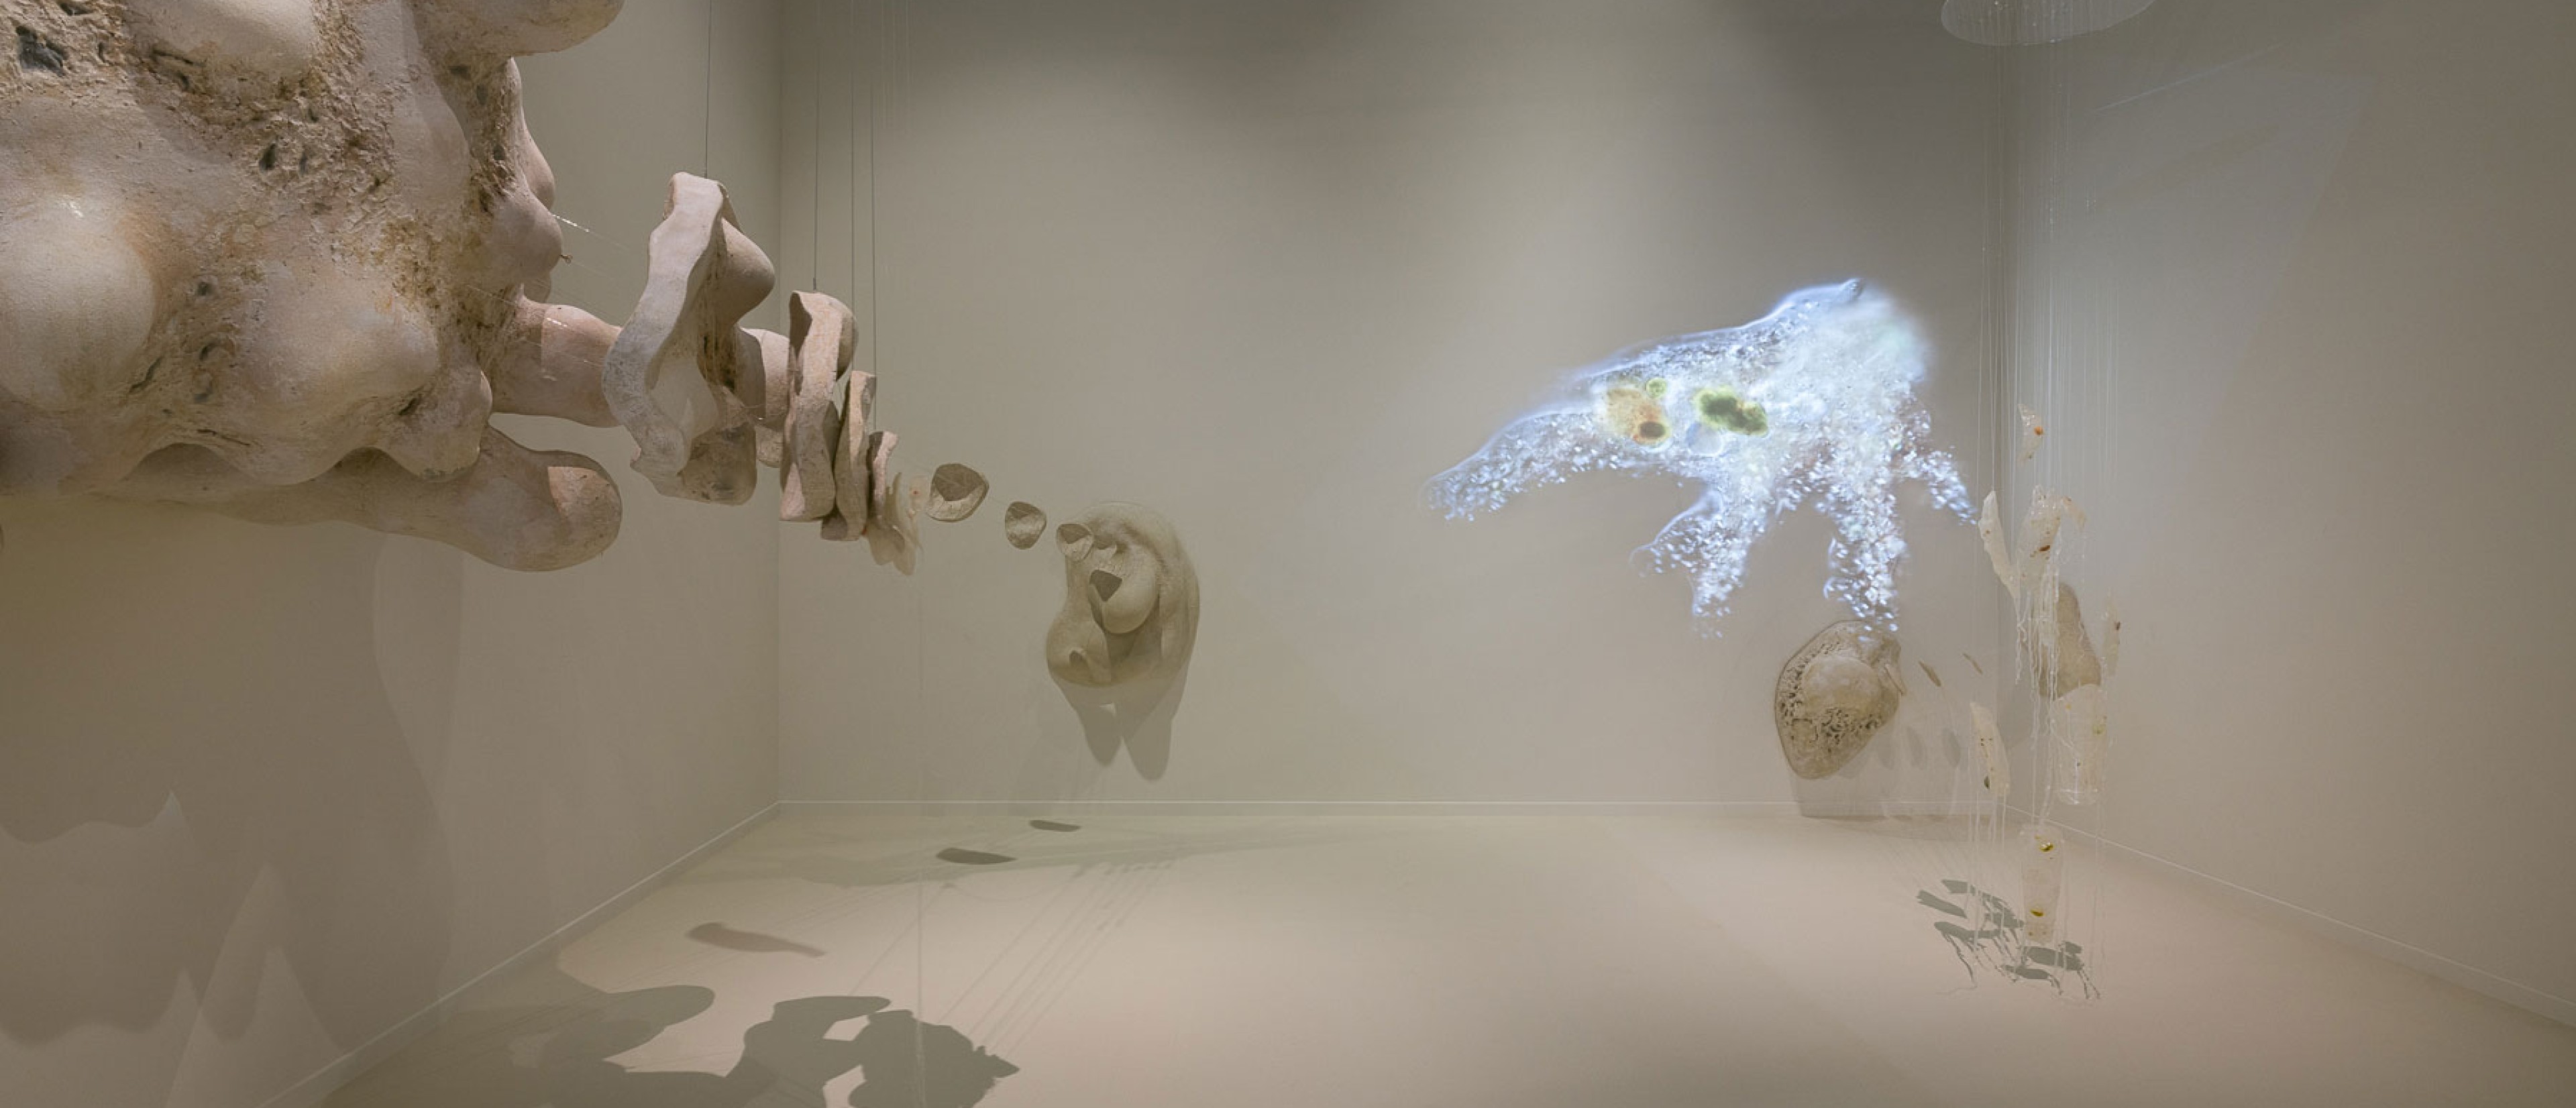 Ausstellungsraum mit Installation: 40.000-fache Vergrößerung einer Amöbe